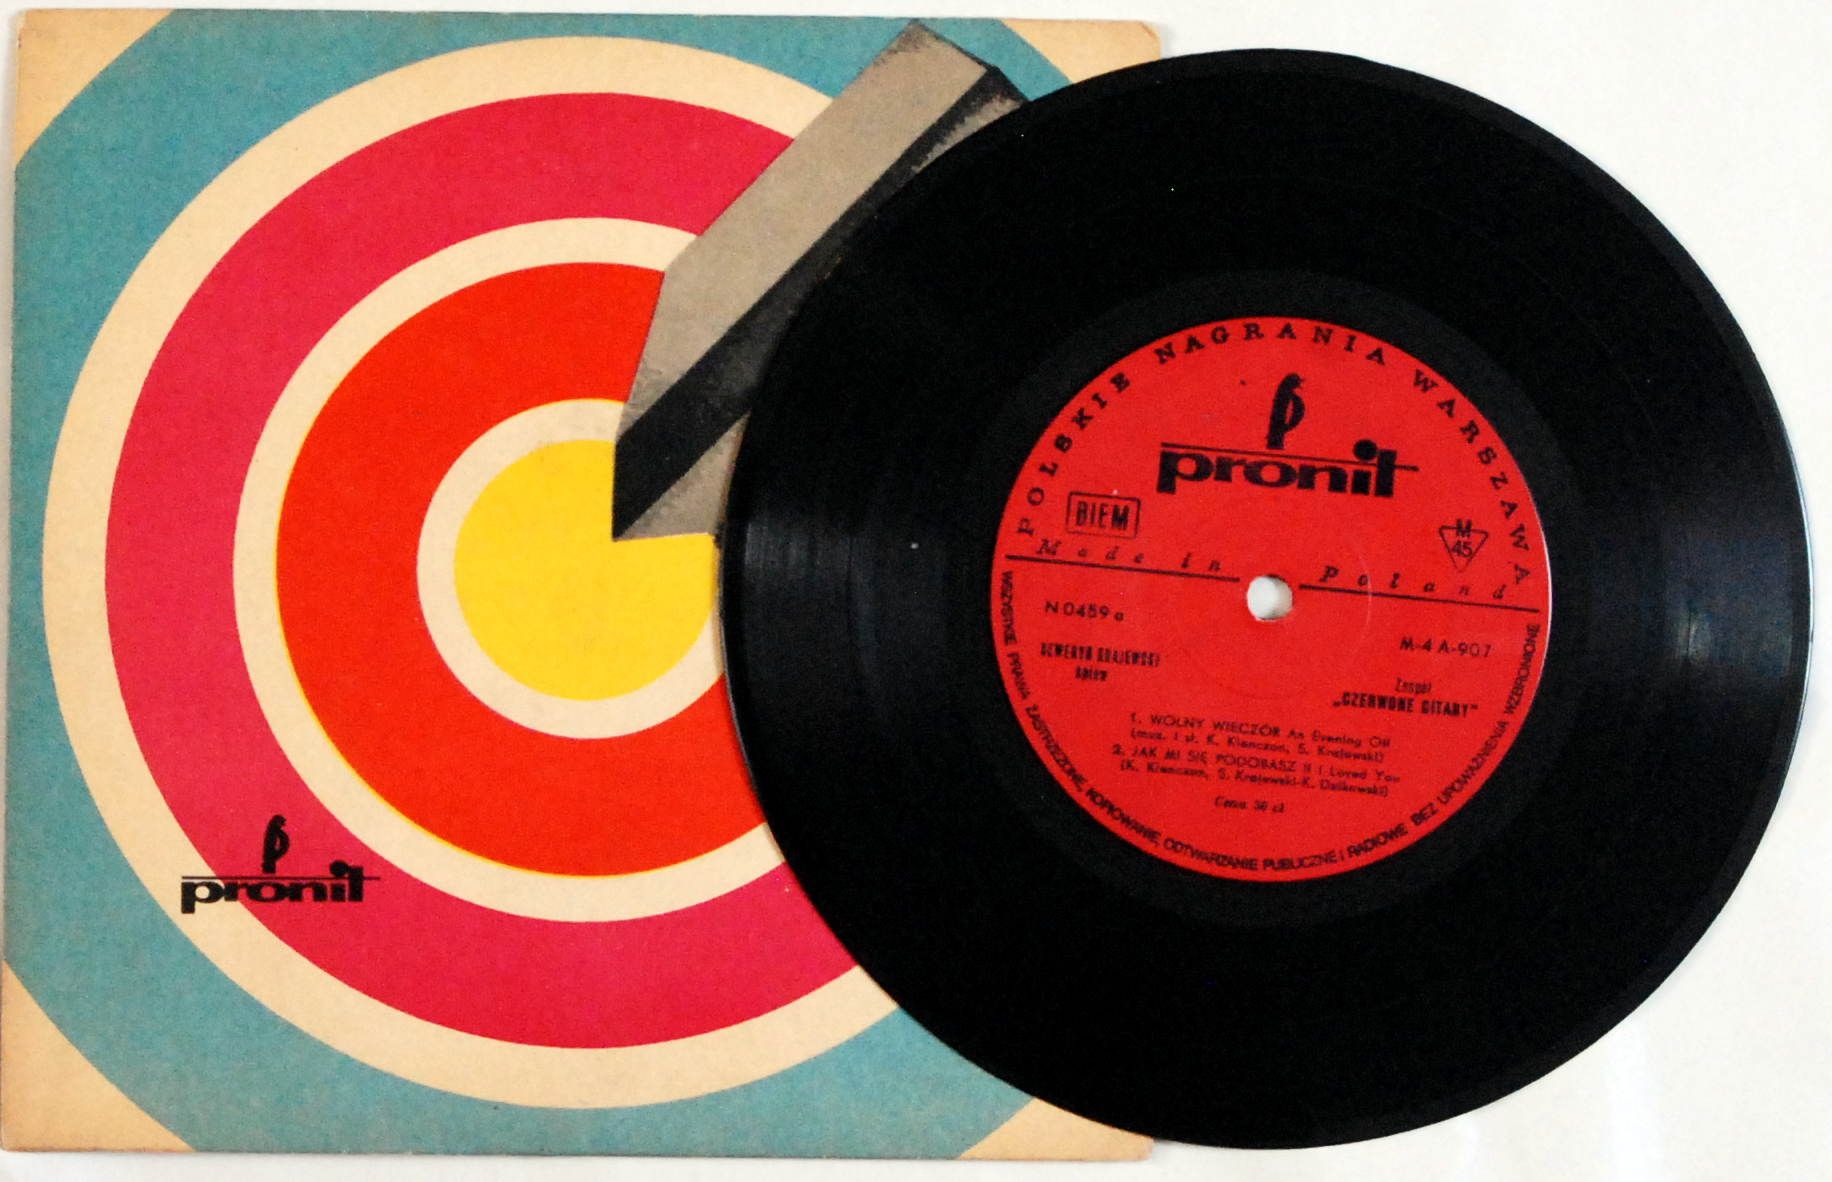 Czerwone Gitary - Wolny Wieczór (N 0459) 1966r.